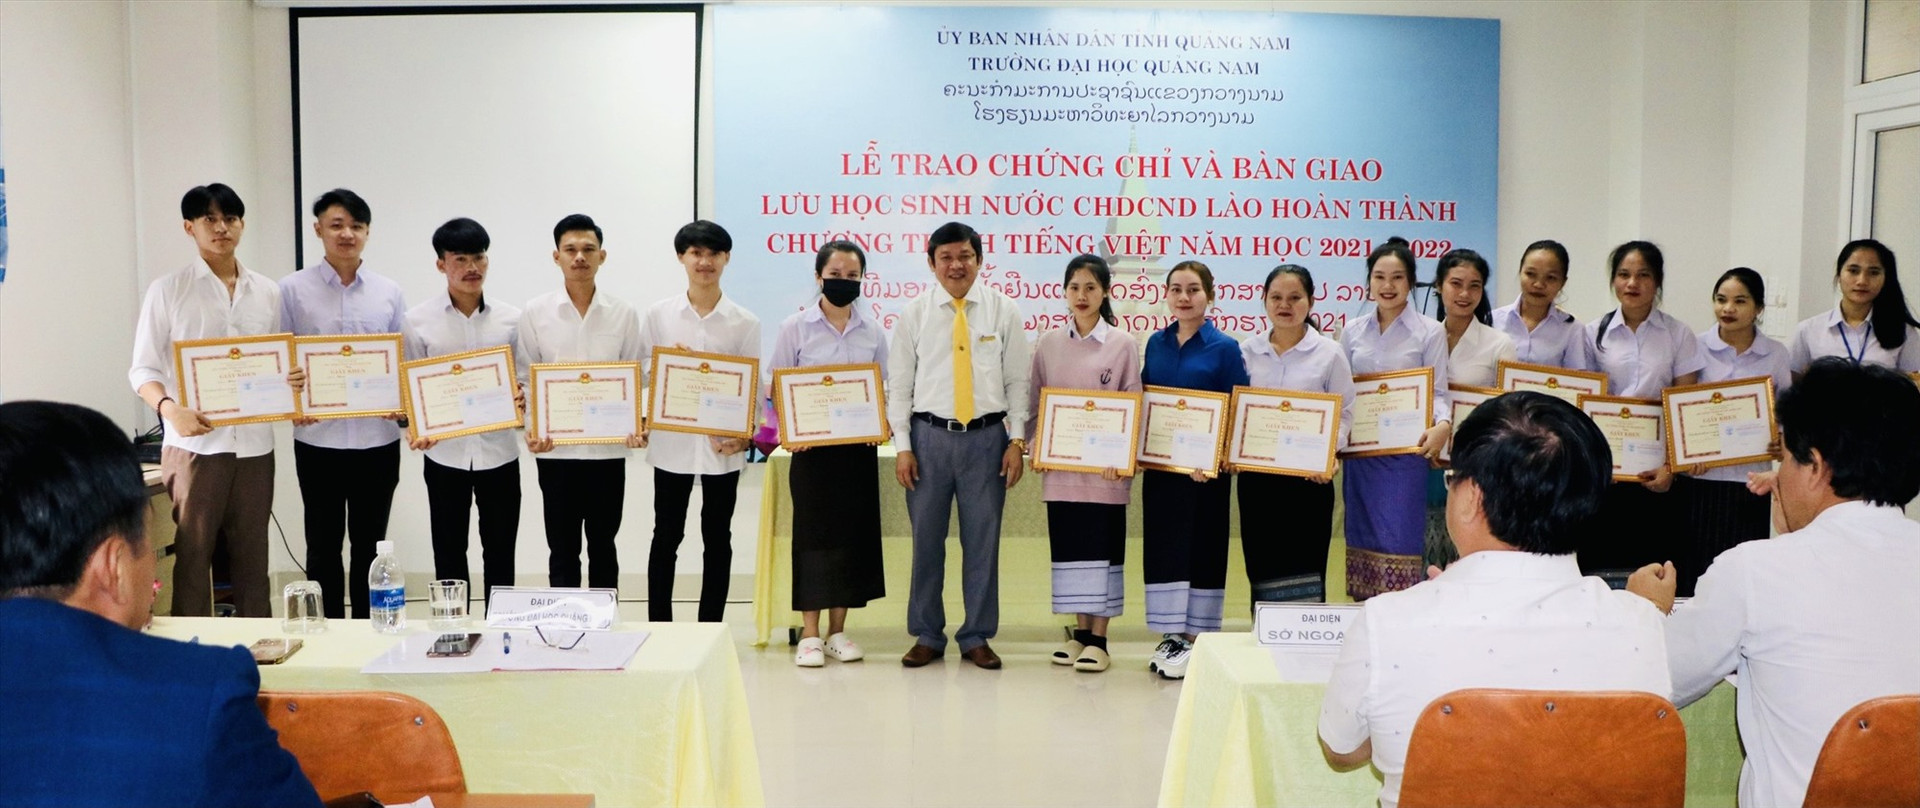 Thời gian qua, Trường Đại học Quảng Nam tiếp nhận và đào tạo nhiều lưu học sinh Lào. Ảnh: ĐHQN